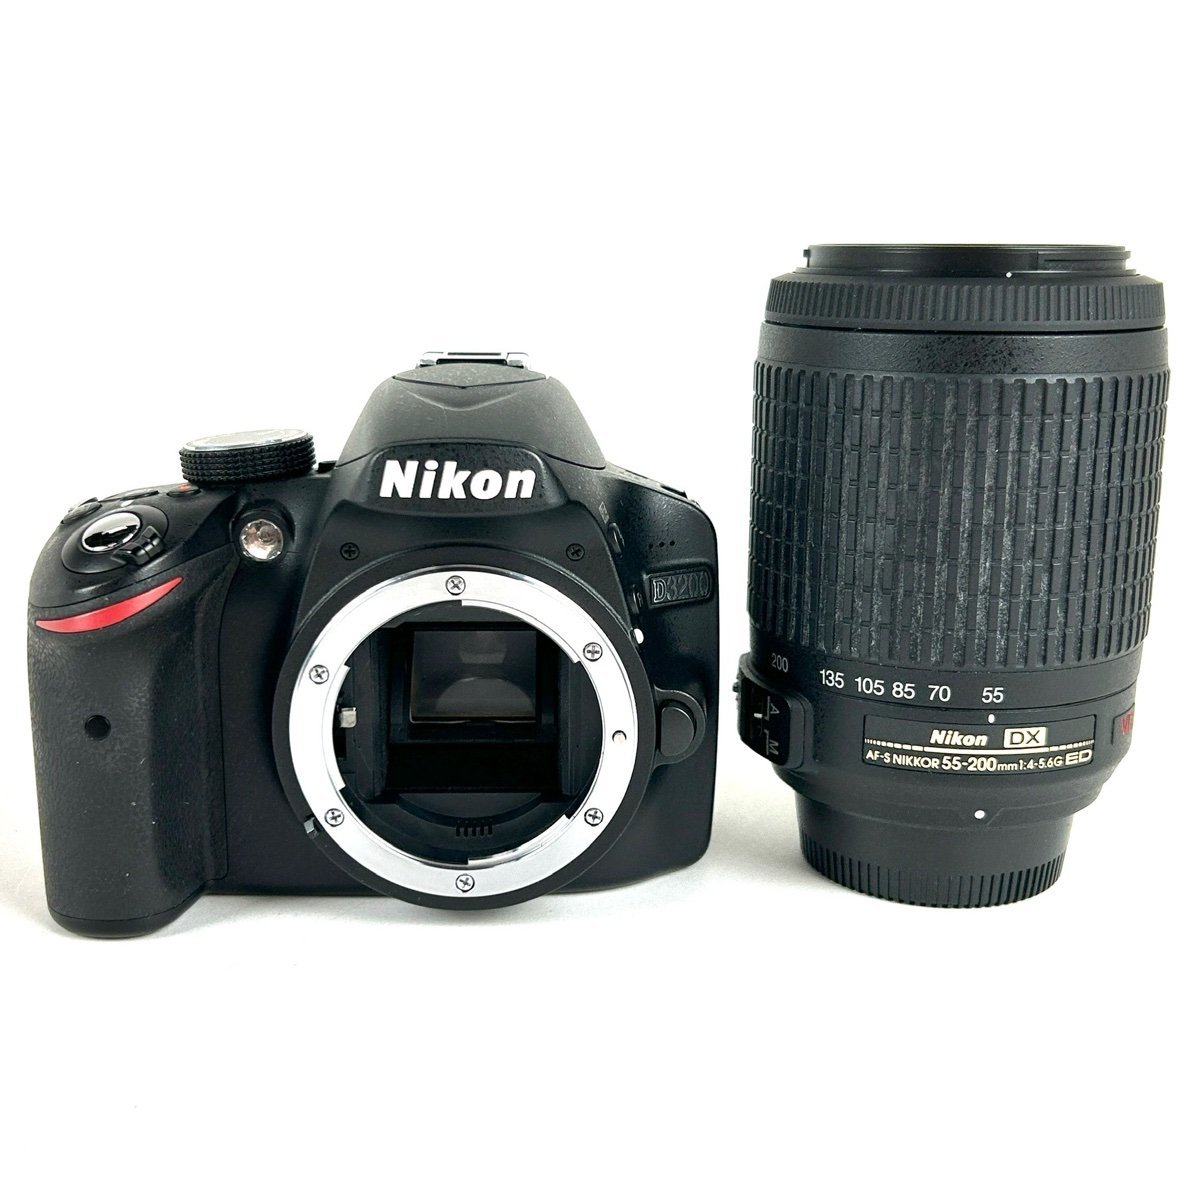 正式的 Nikon ニコン D3200 【中古】 一眼レフカメラ デジタル VR ED